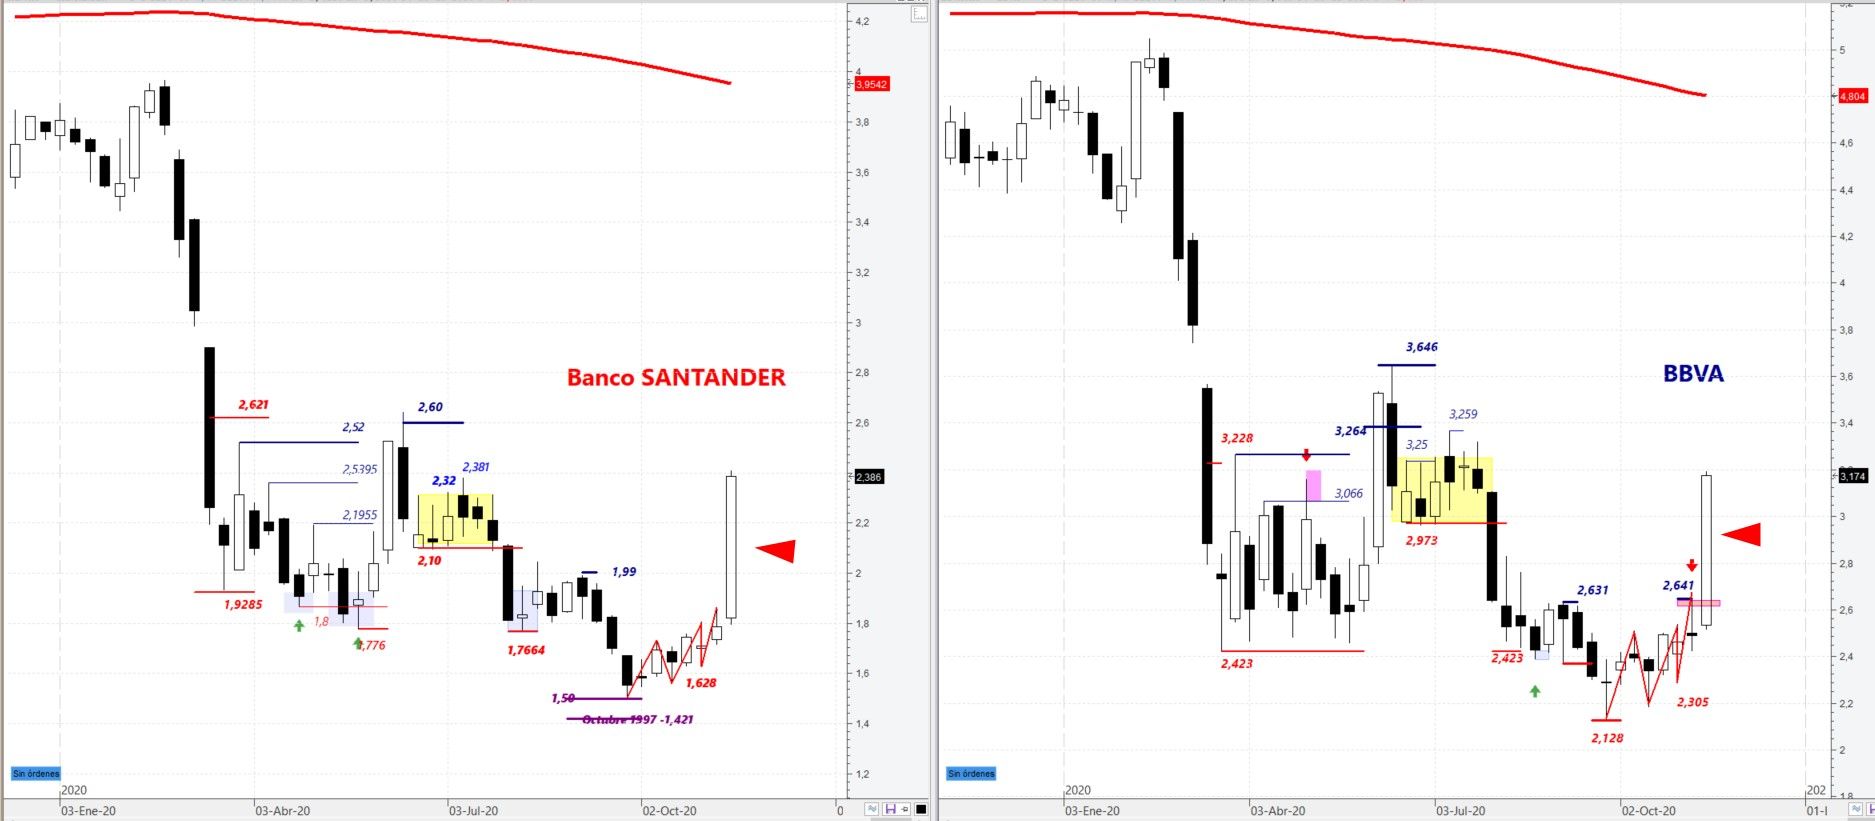 Ibex 35: Banco Santander y BBVA en gráfico semanal